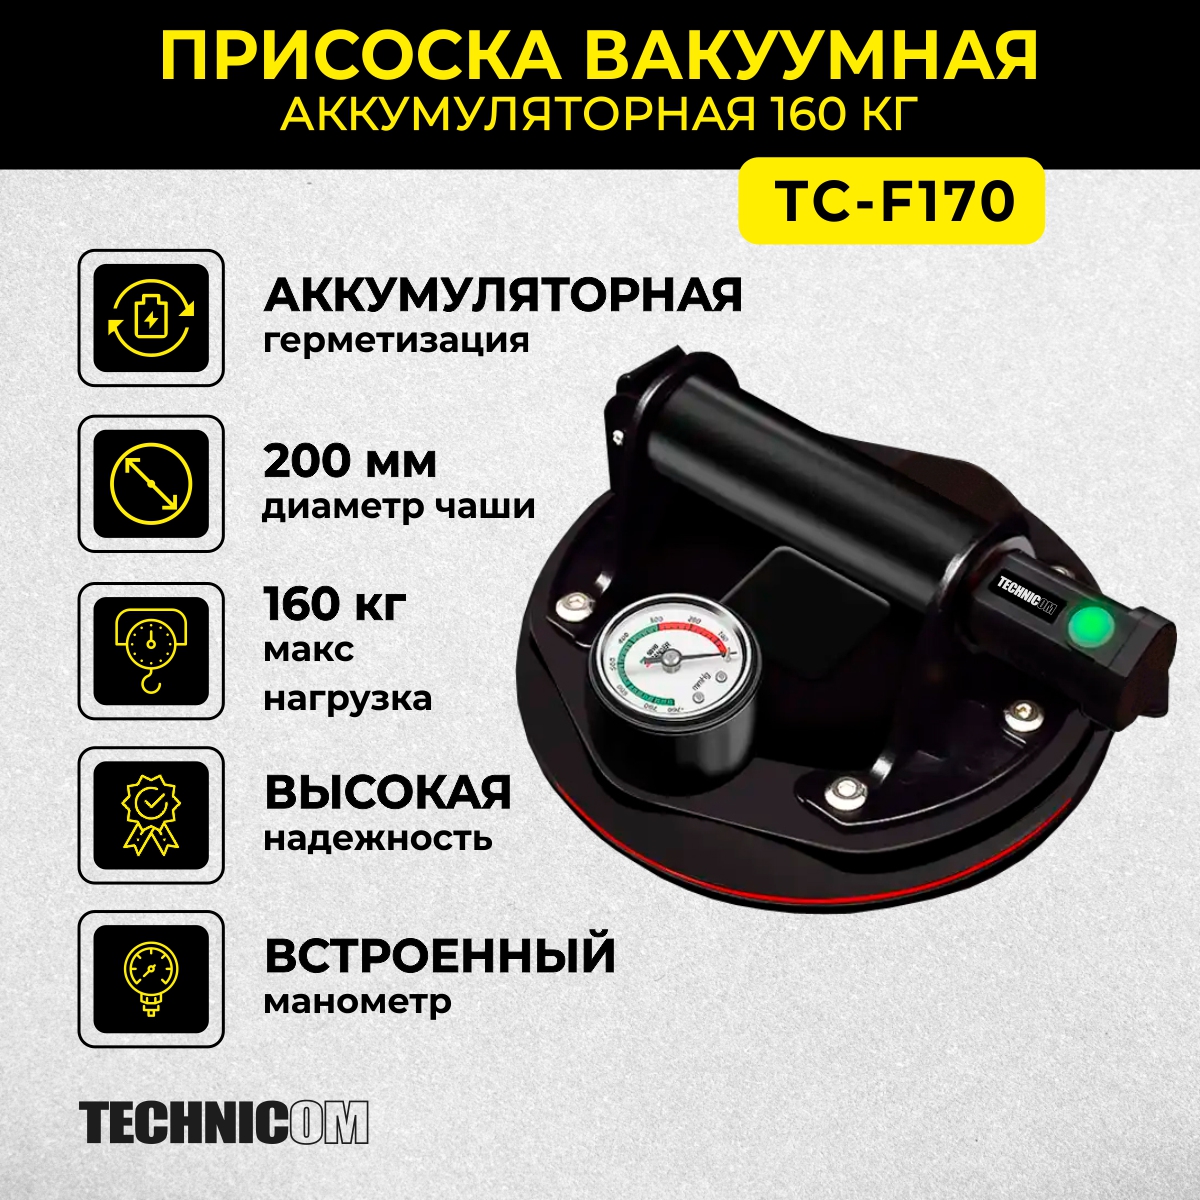 Присоска вакуумная аккумуляторная TECHNICOM TC-F170